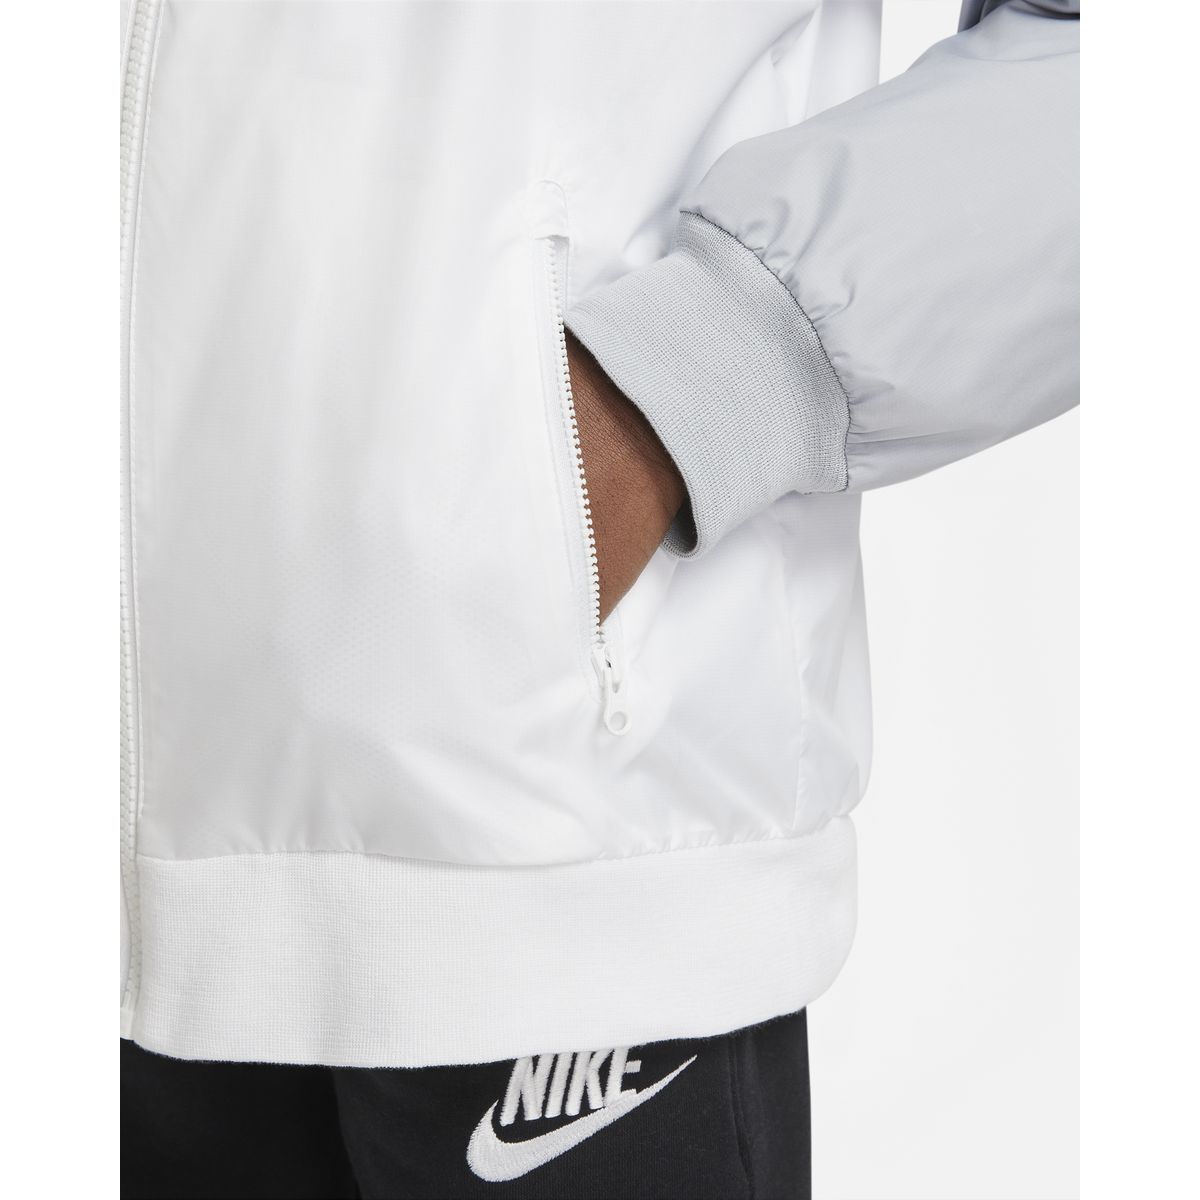 Nike Sportswear Windrunner Jungen Unterjacke_1